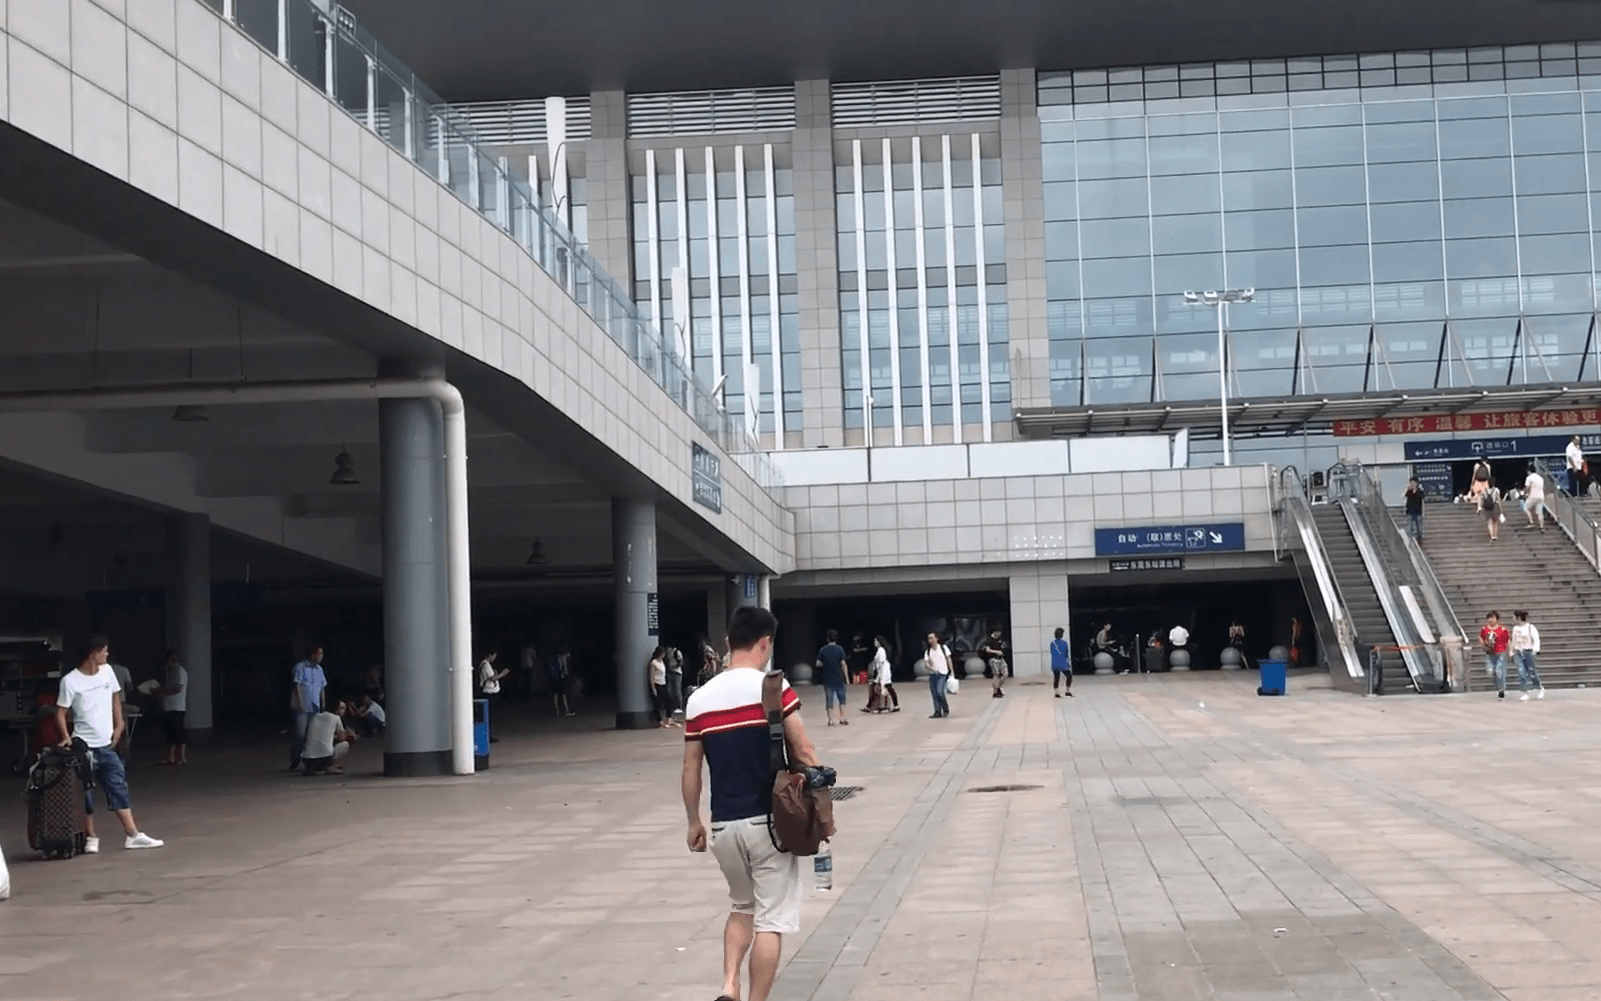 东莞东火车站:如今车站冷冷清清,为何坐火车的人越来越少?